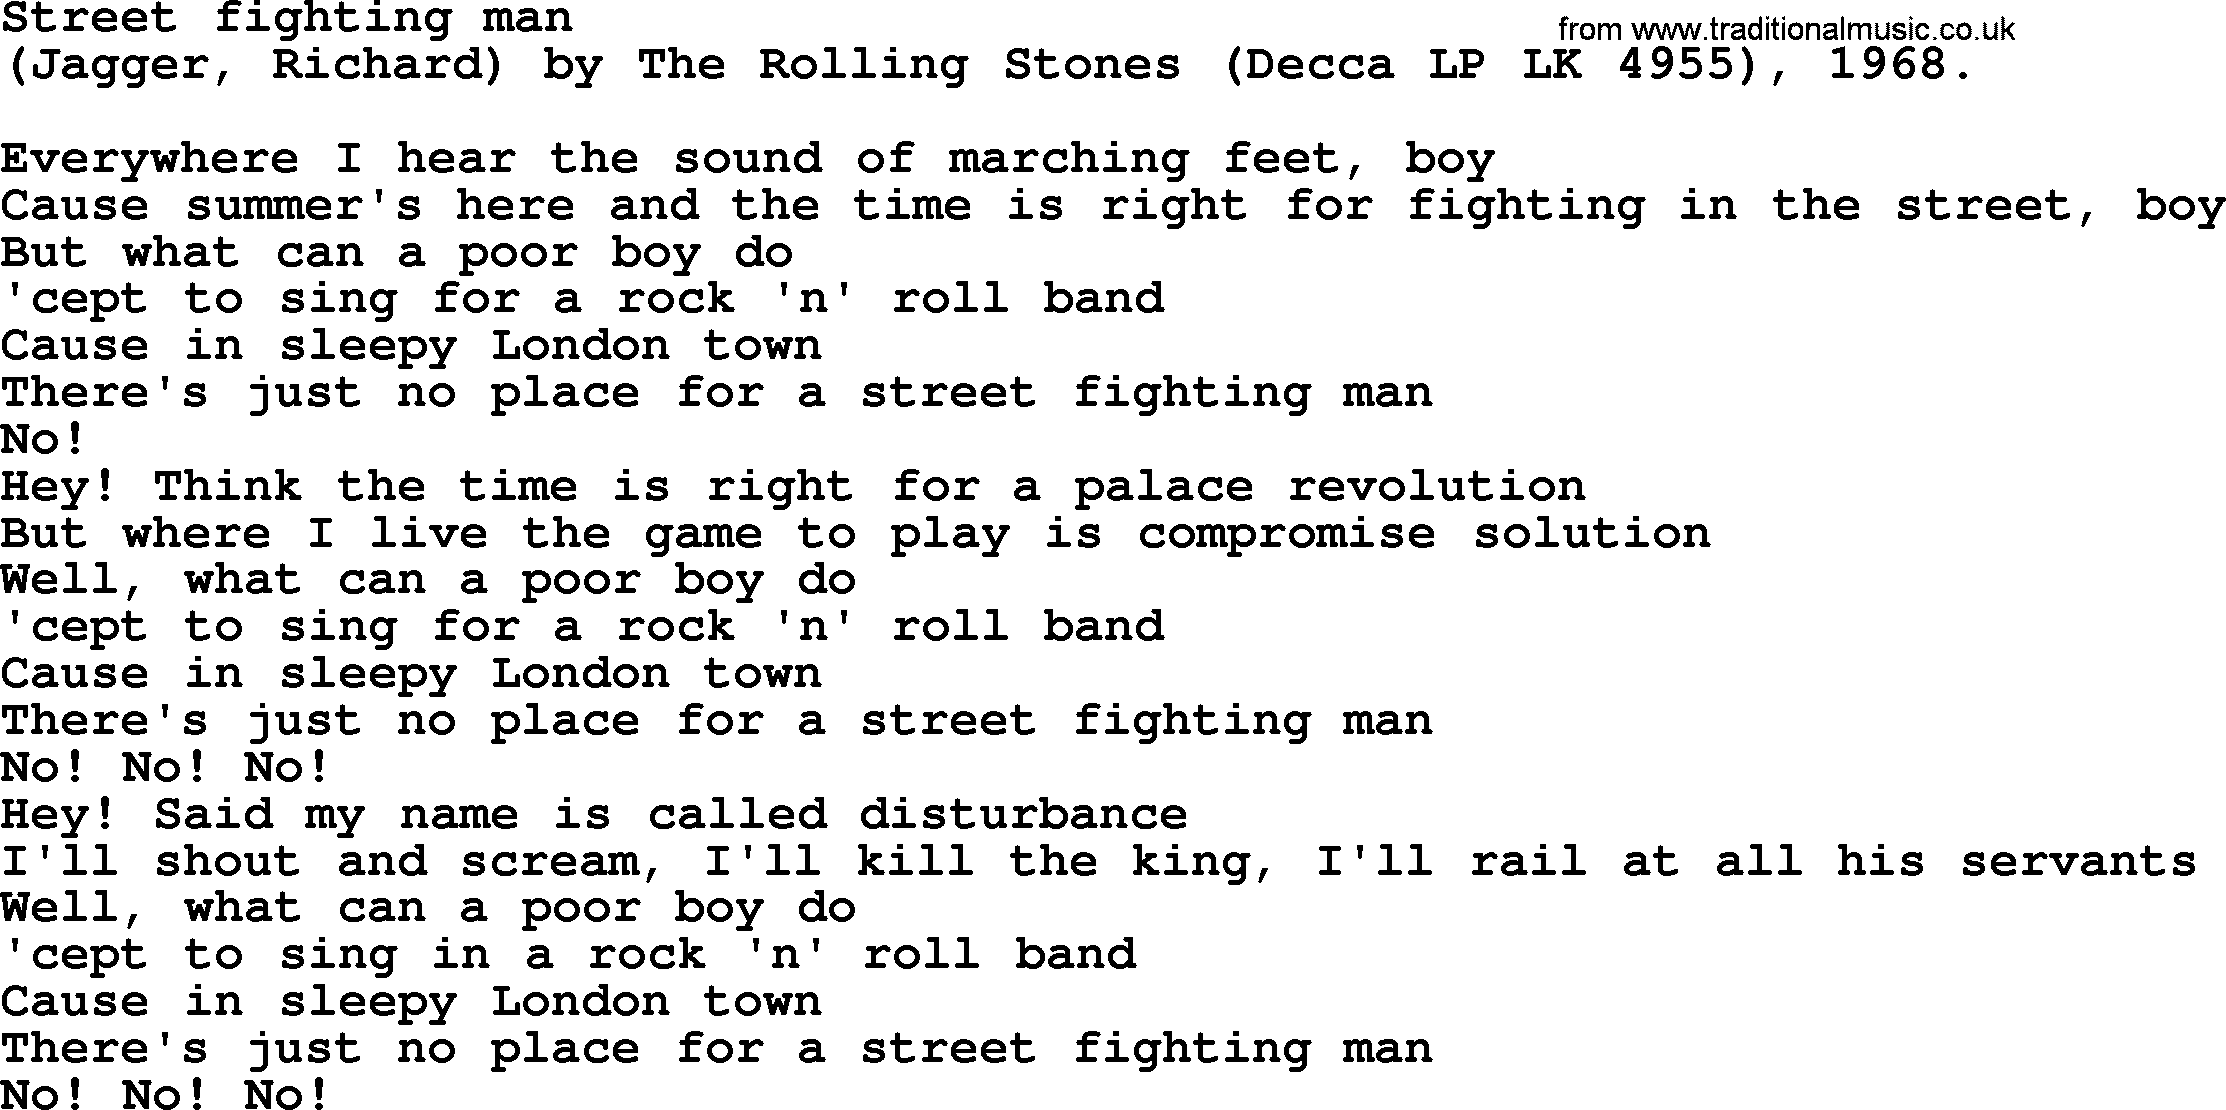 Bruce Springsteen song: Street Fighting Man lyrics